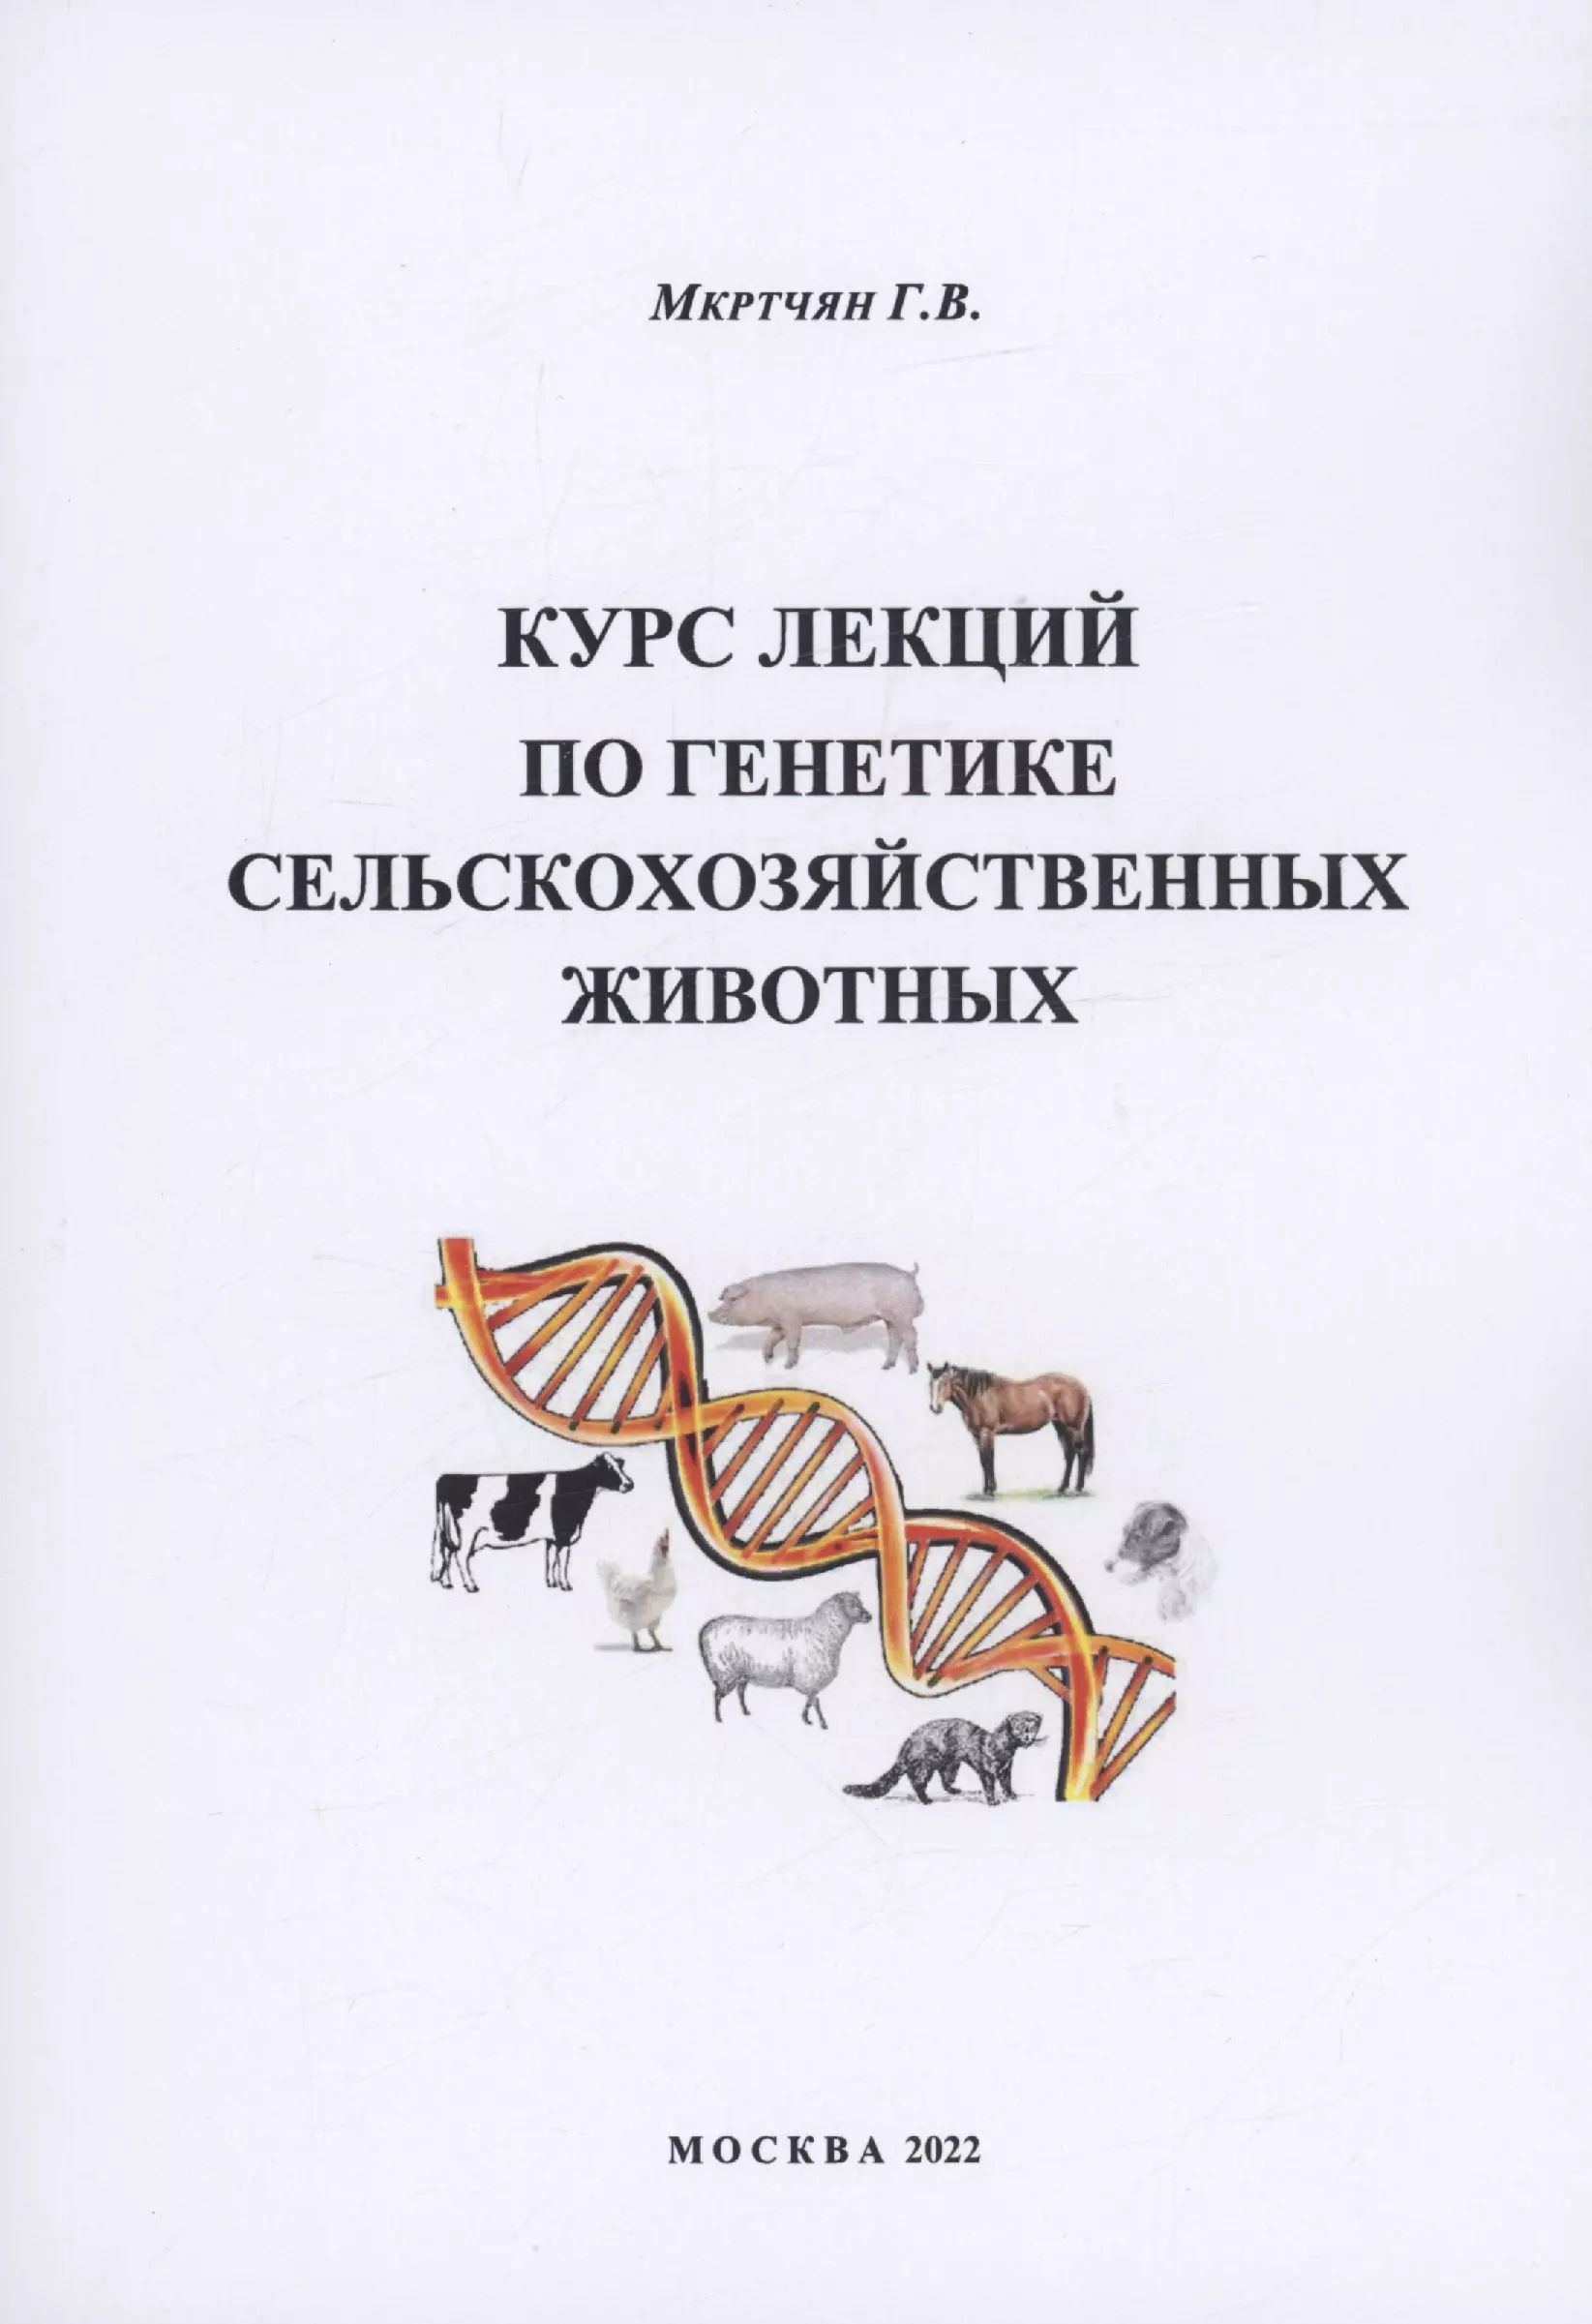 Мкртчян Гаянэ Владимировна - Курс лекций по генетике сельскохозяйственных животных